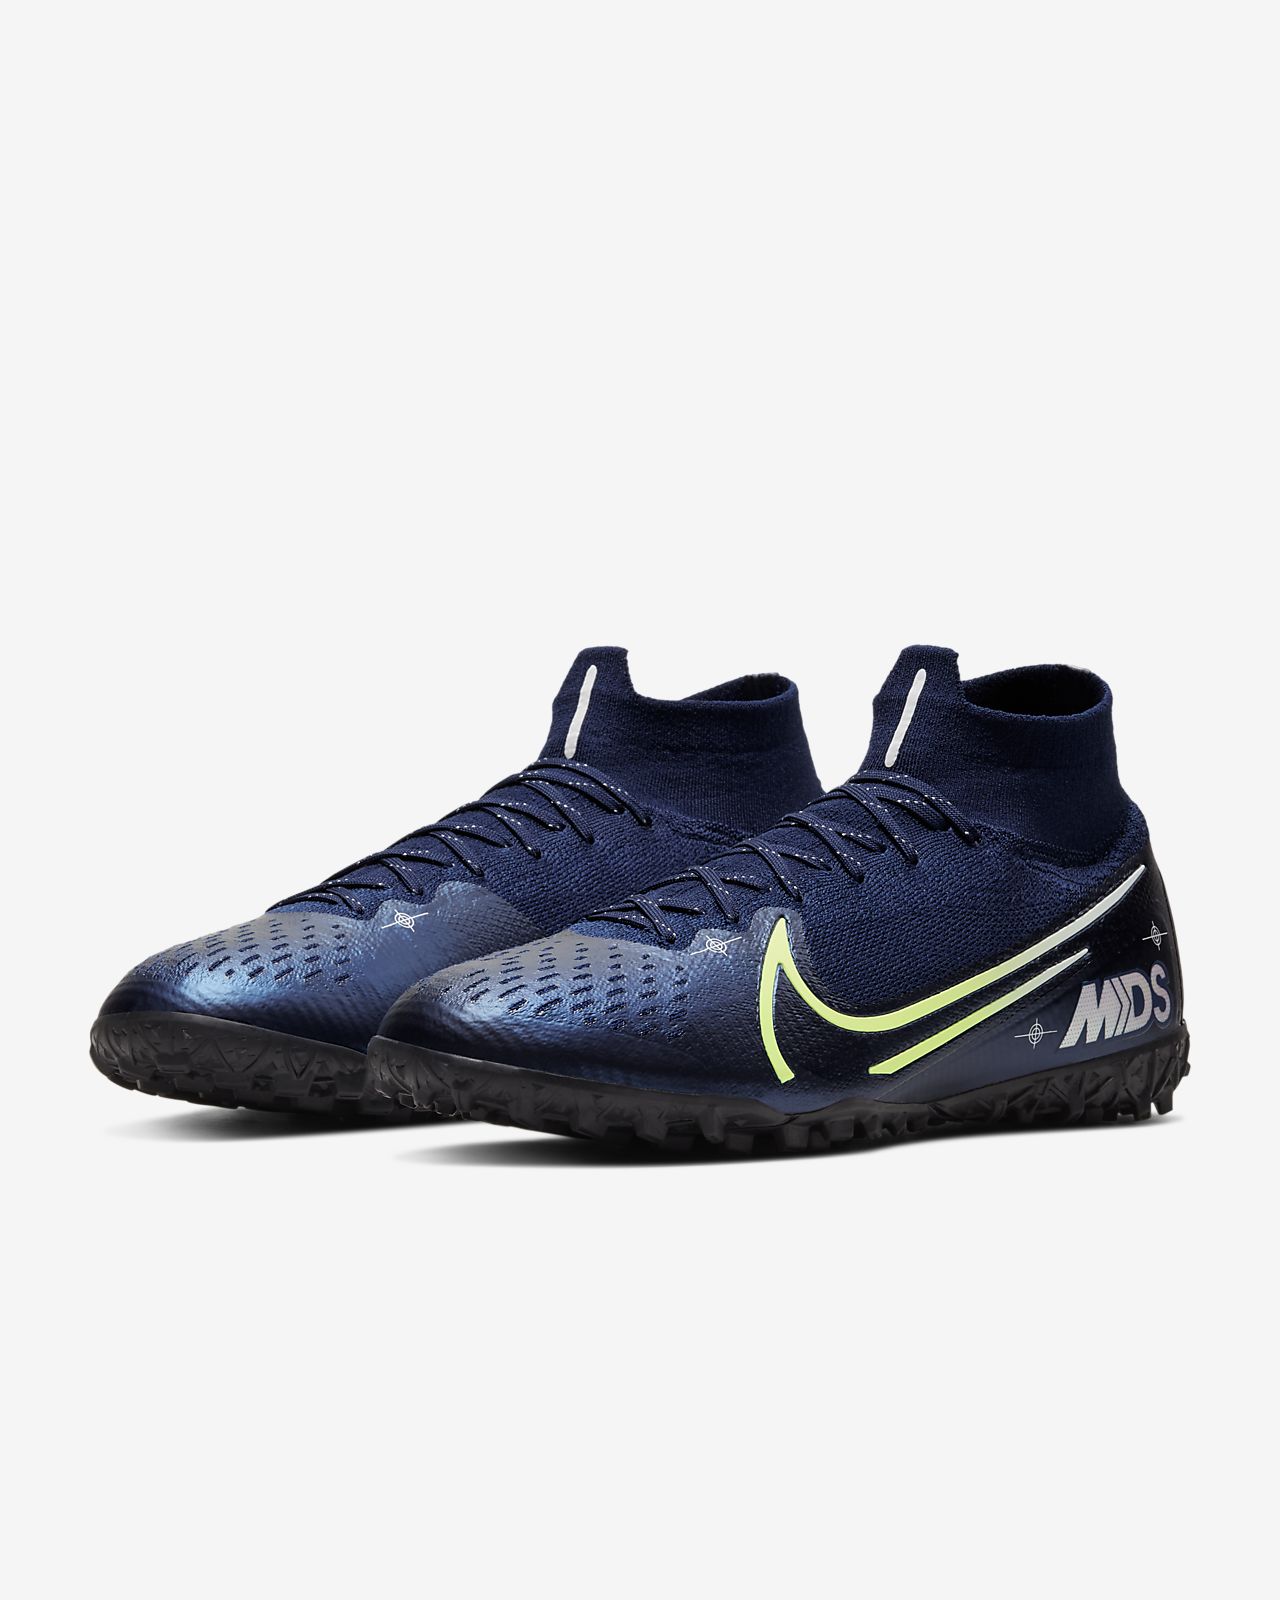 Nike Dream Speed Mercial Vapor 13 Elite Men 'Knit Knit Fg Soccer Shoes